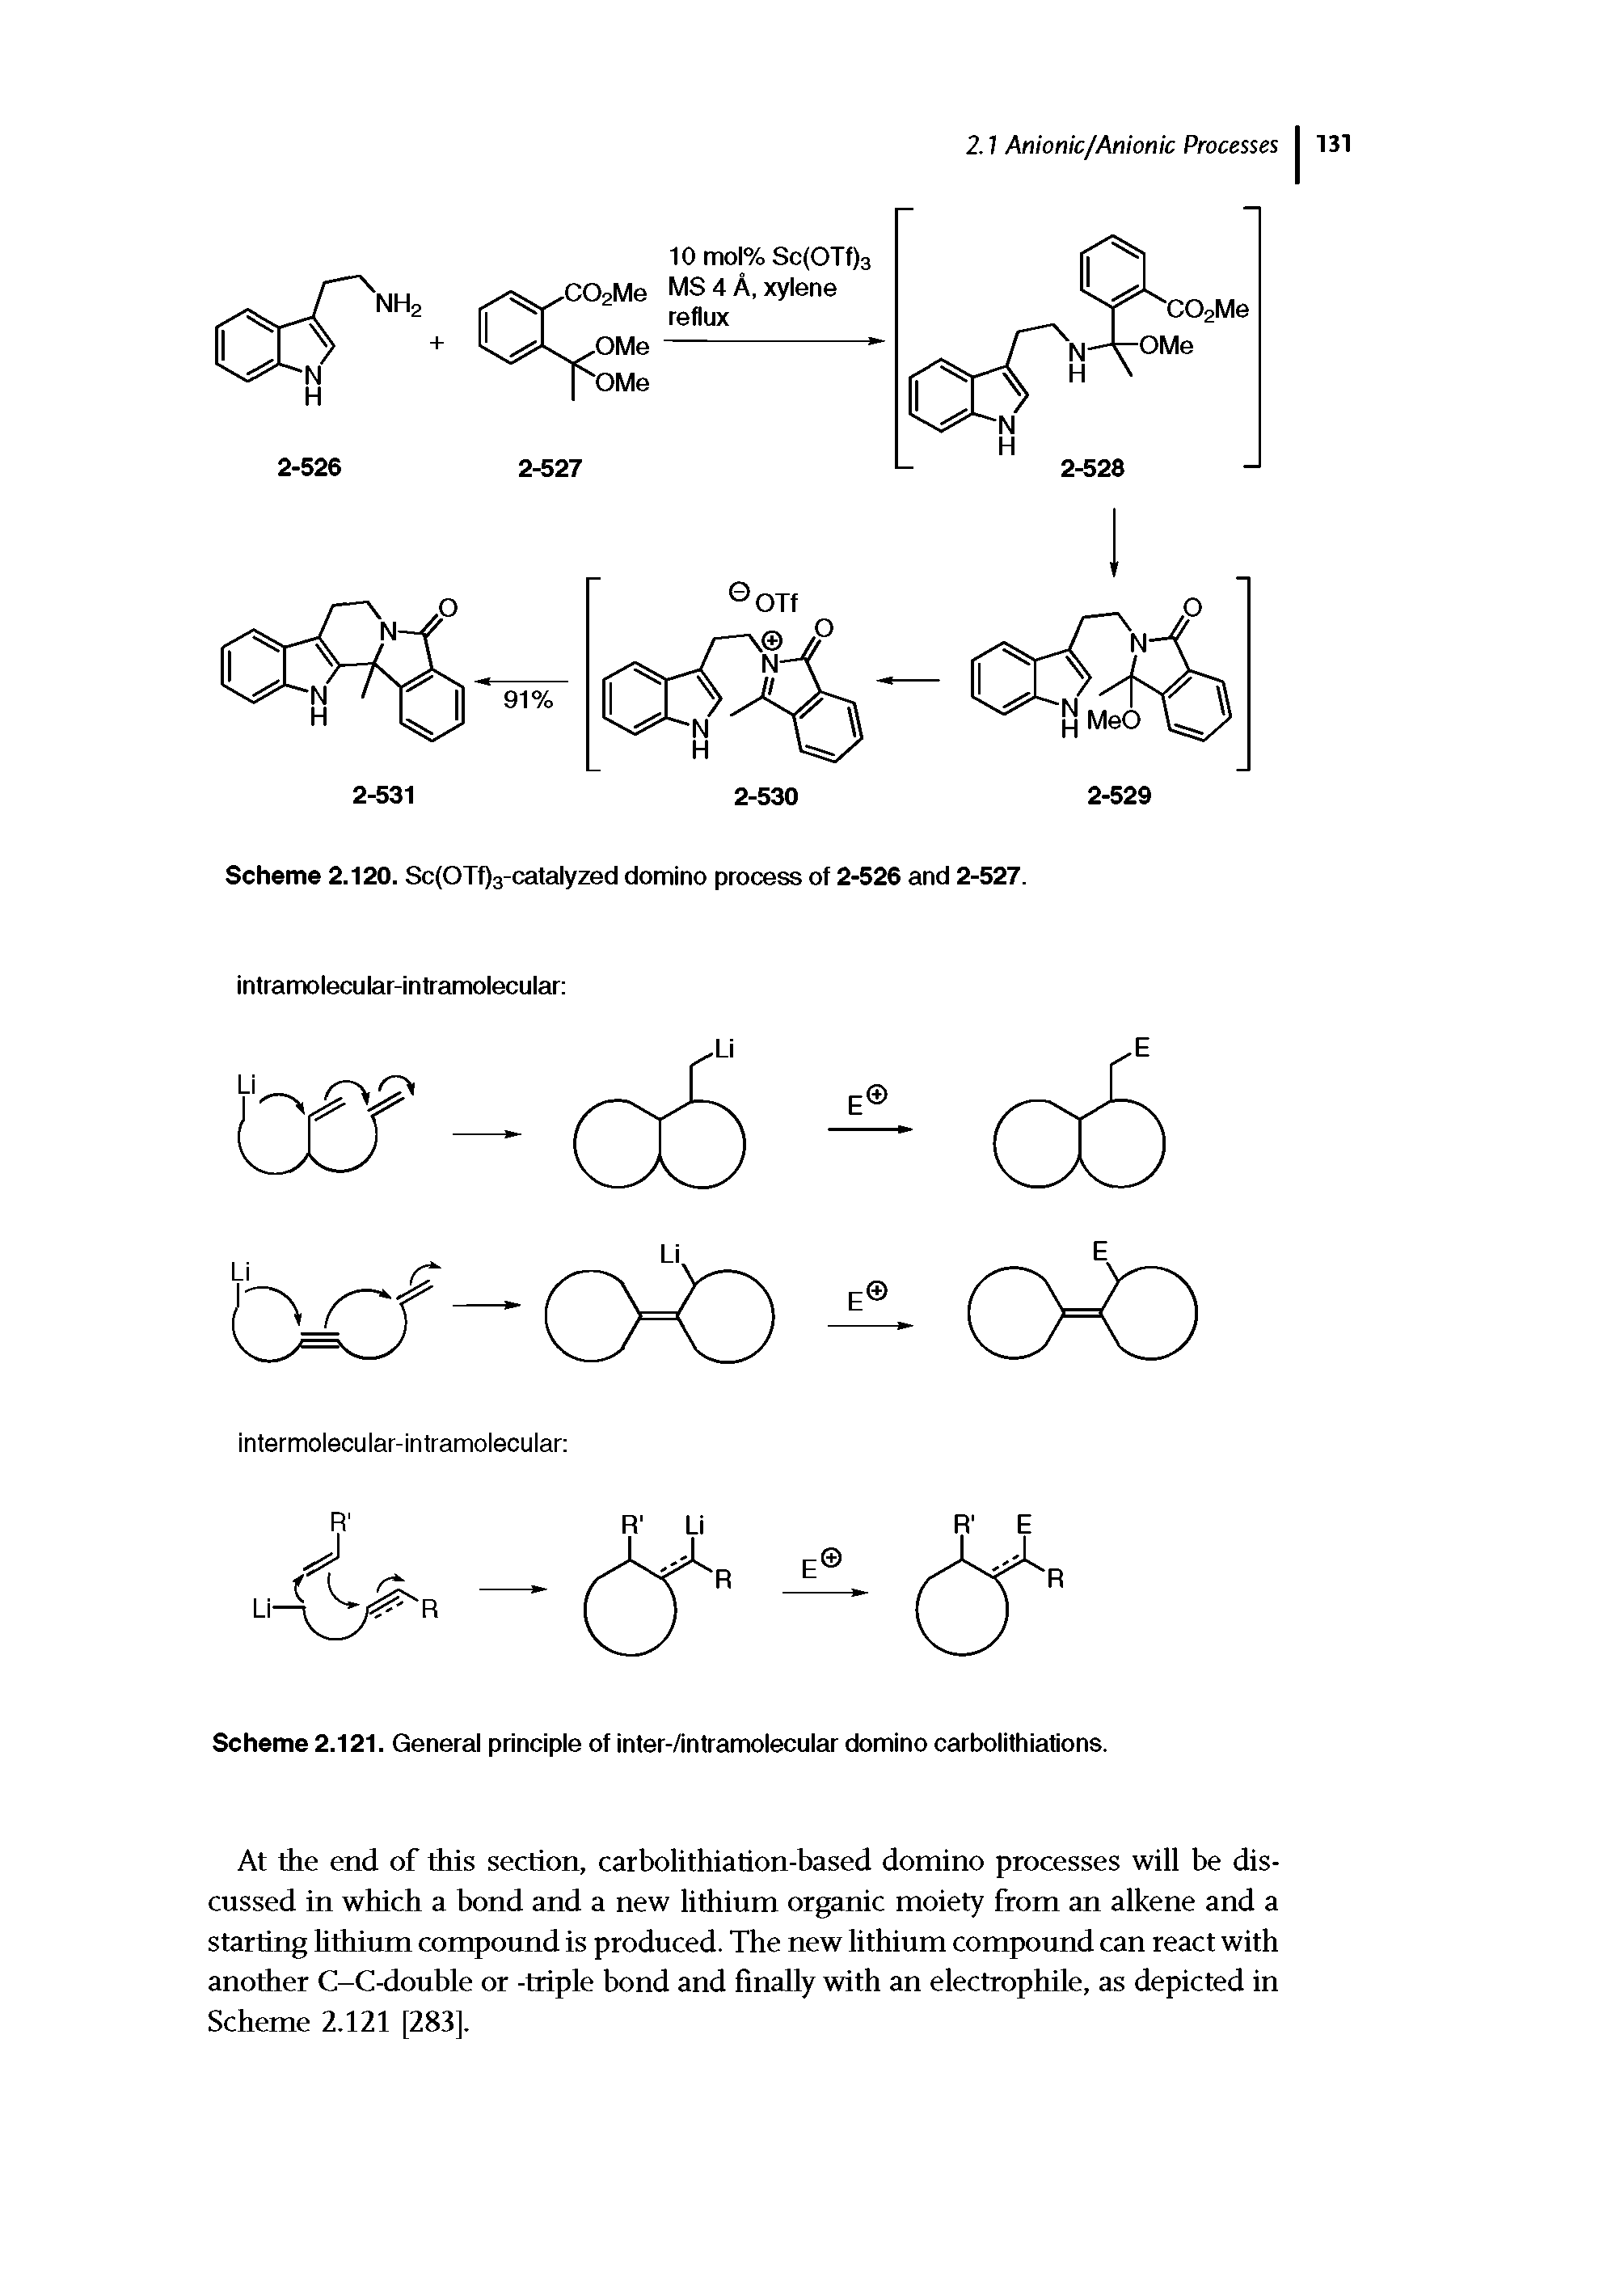 Scheme 2.121. General principle of inter-/intramolecular domino carbolithiations.